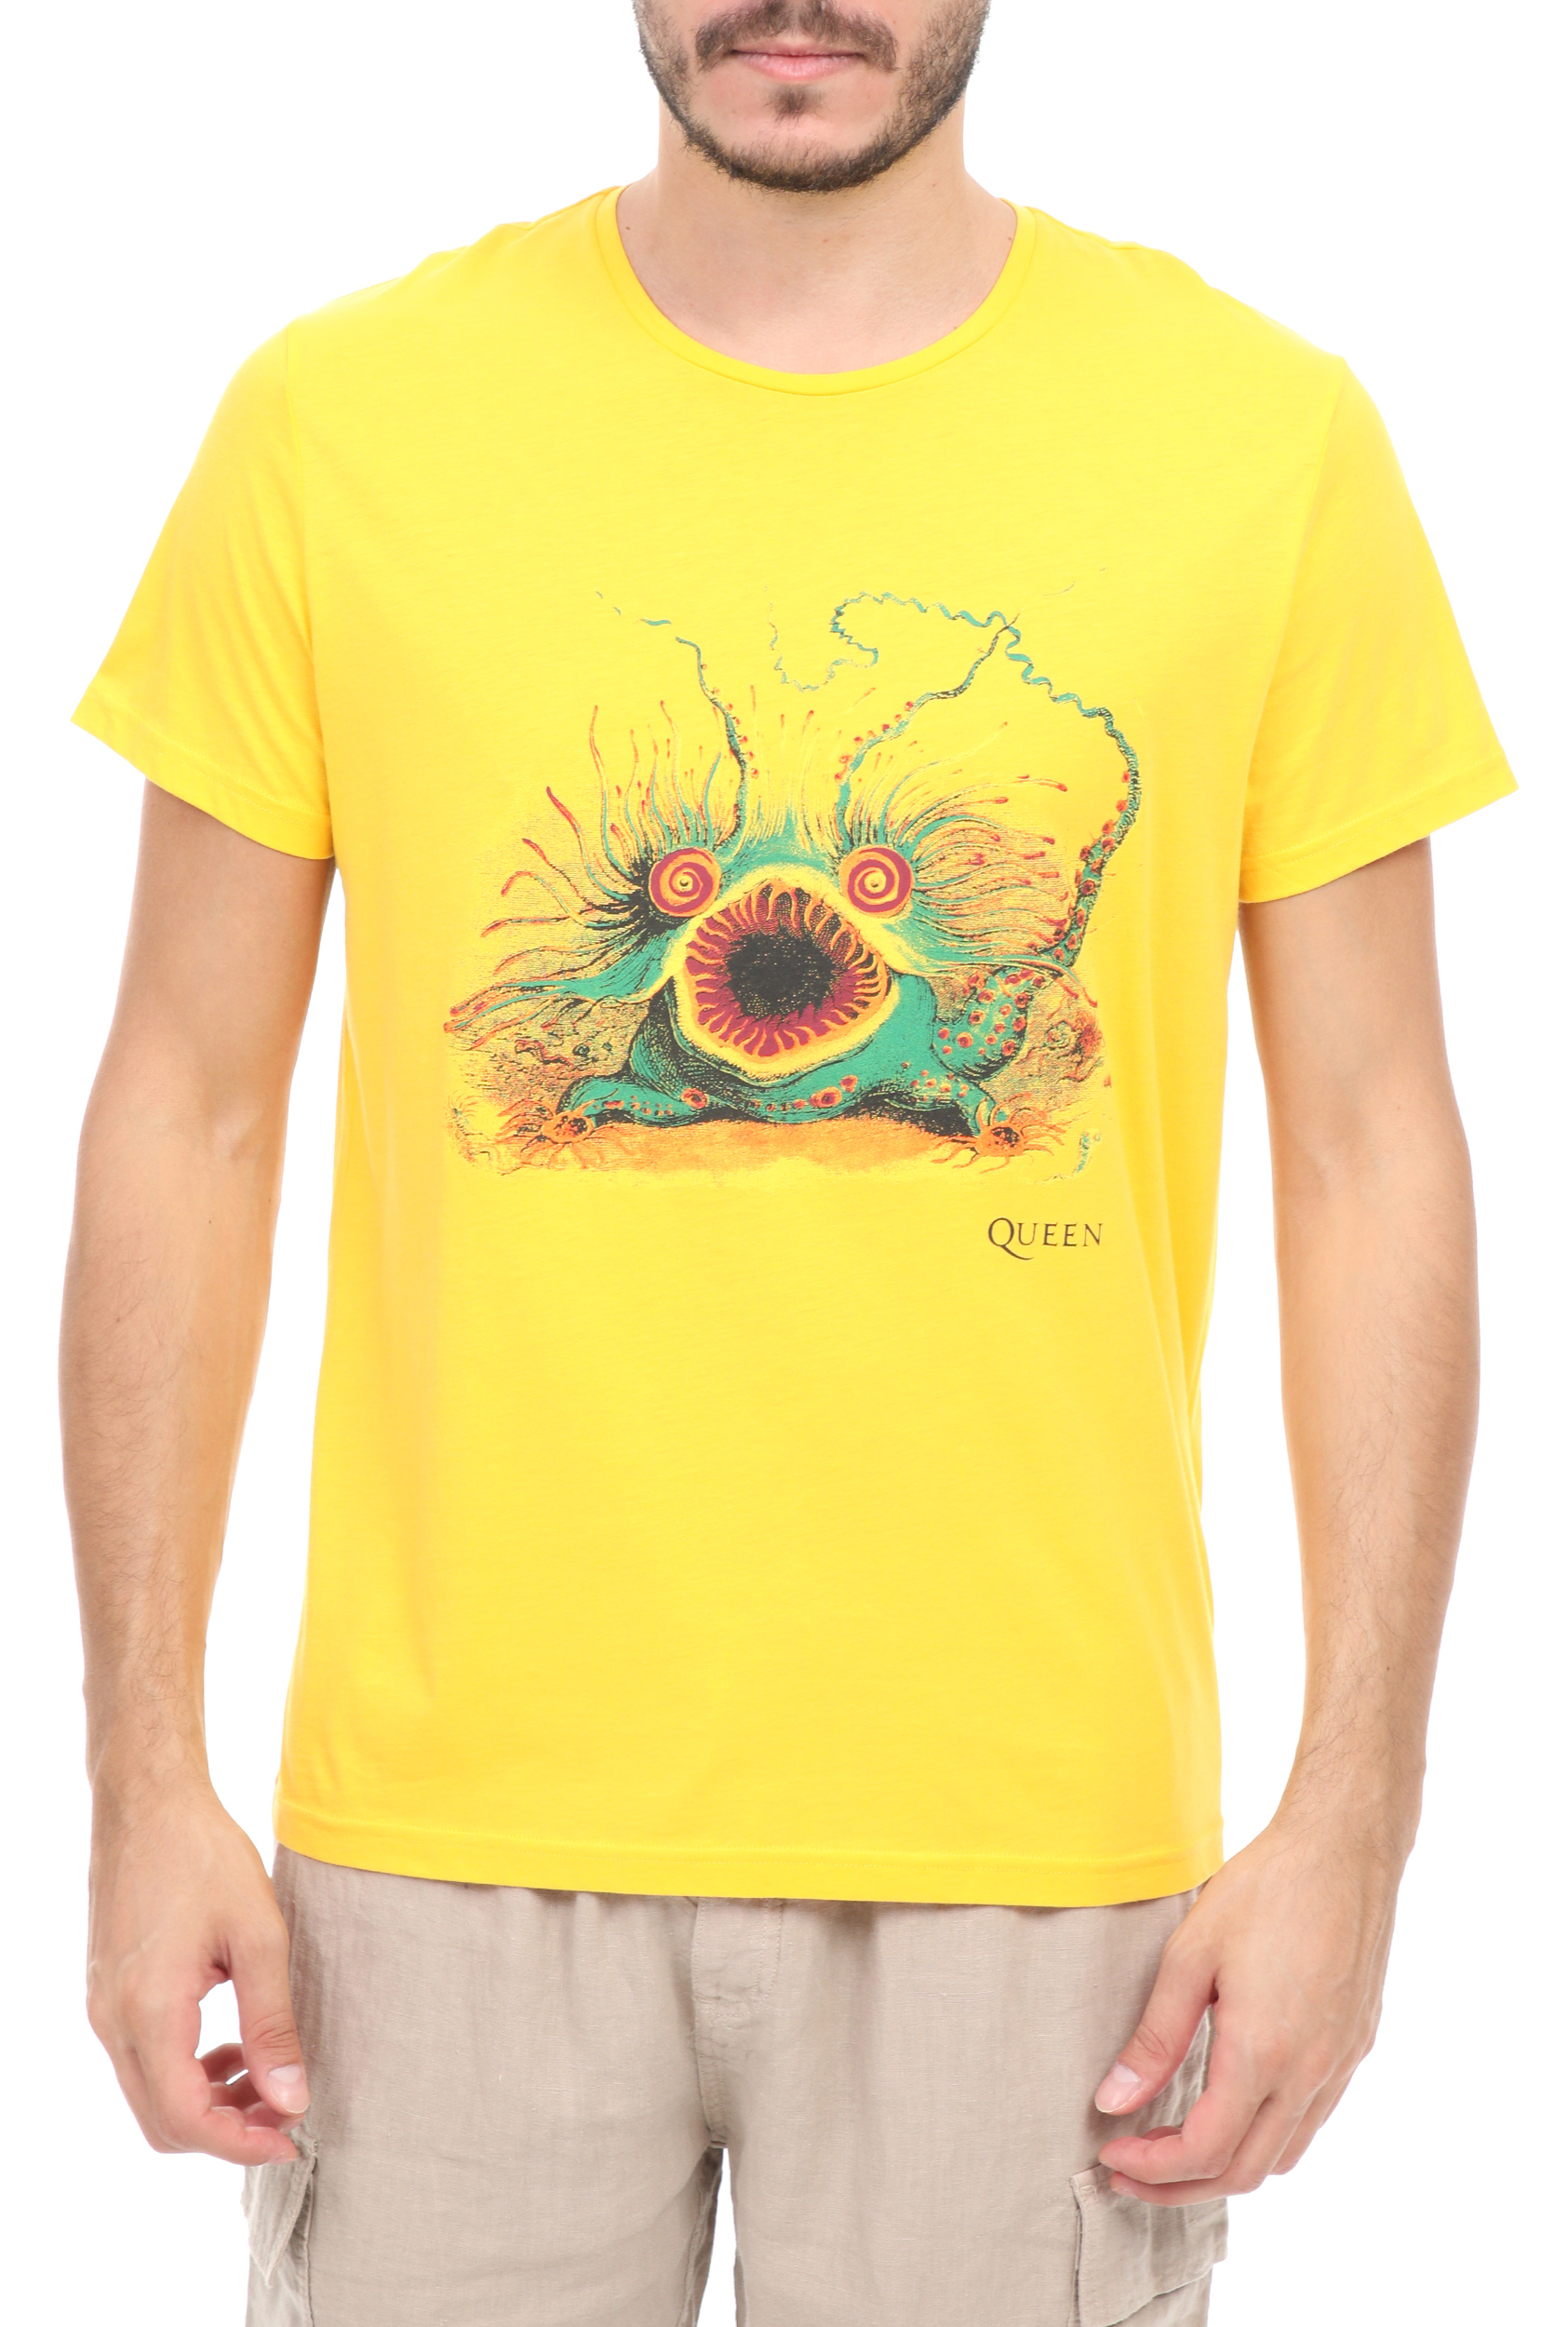 Ανδρικά/Ρούχα/Μπλούζες/Κοντομάνικες VILEBREQUIN - Ανδρικό t-shirt VILEBREQUIN TAO κίτρινο